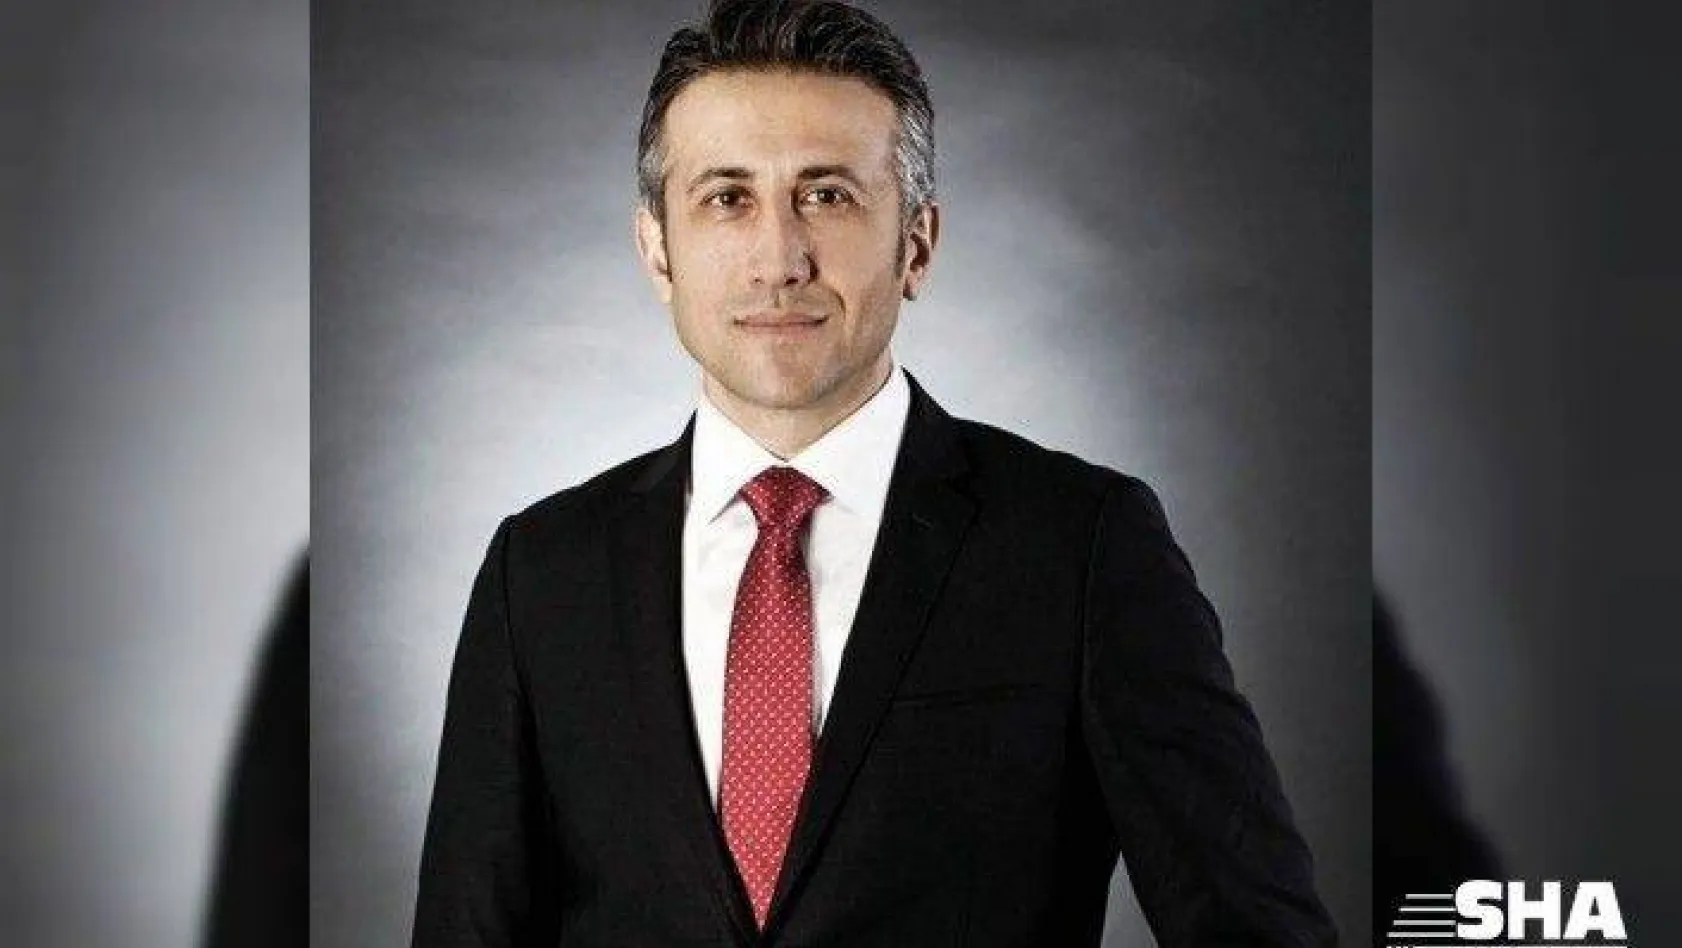 Hasan Ecesoy Kentbank Yönetim Kurulu Başkanı oldu